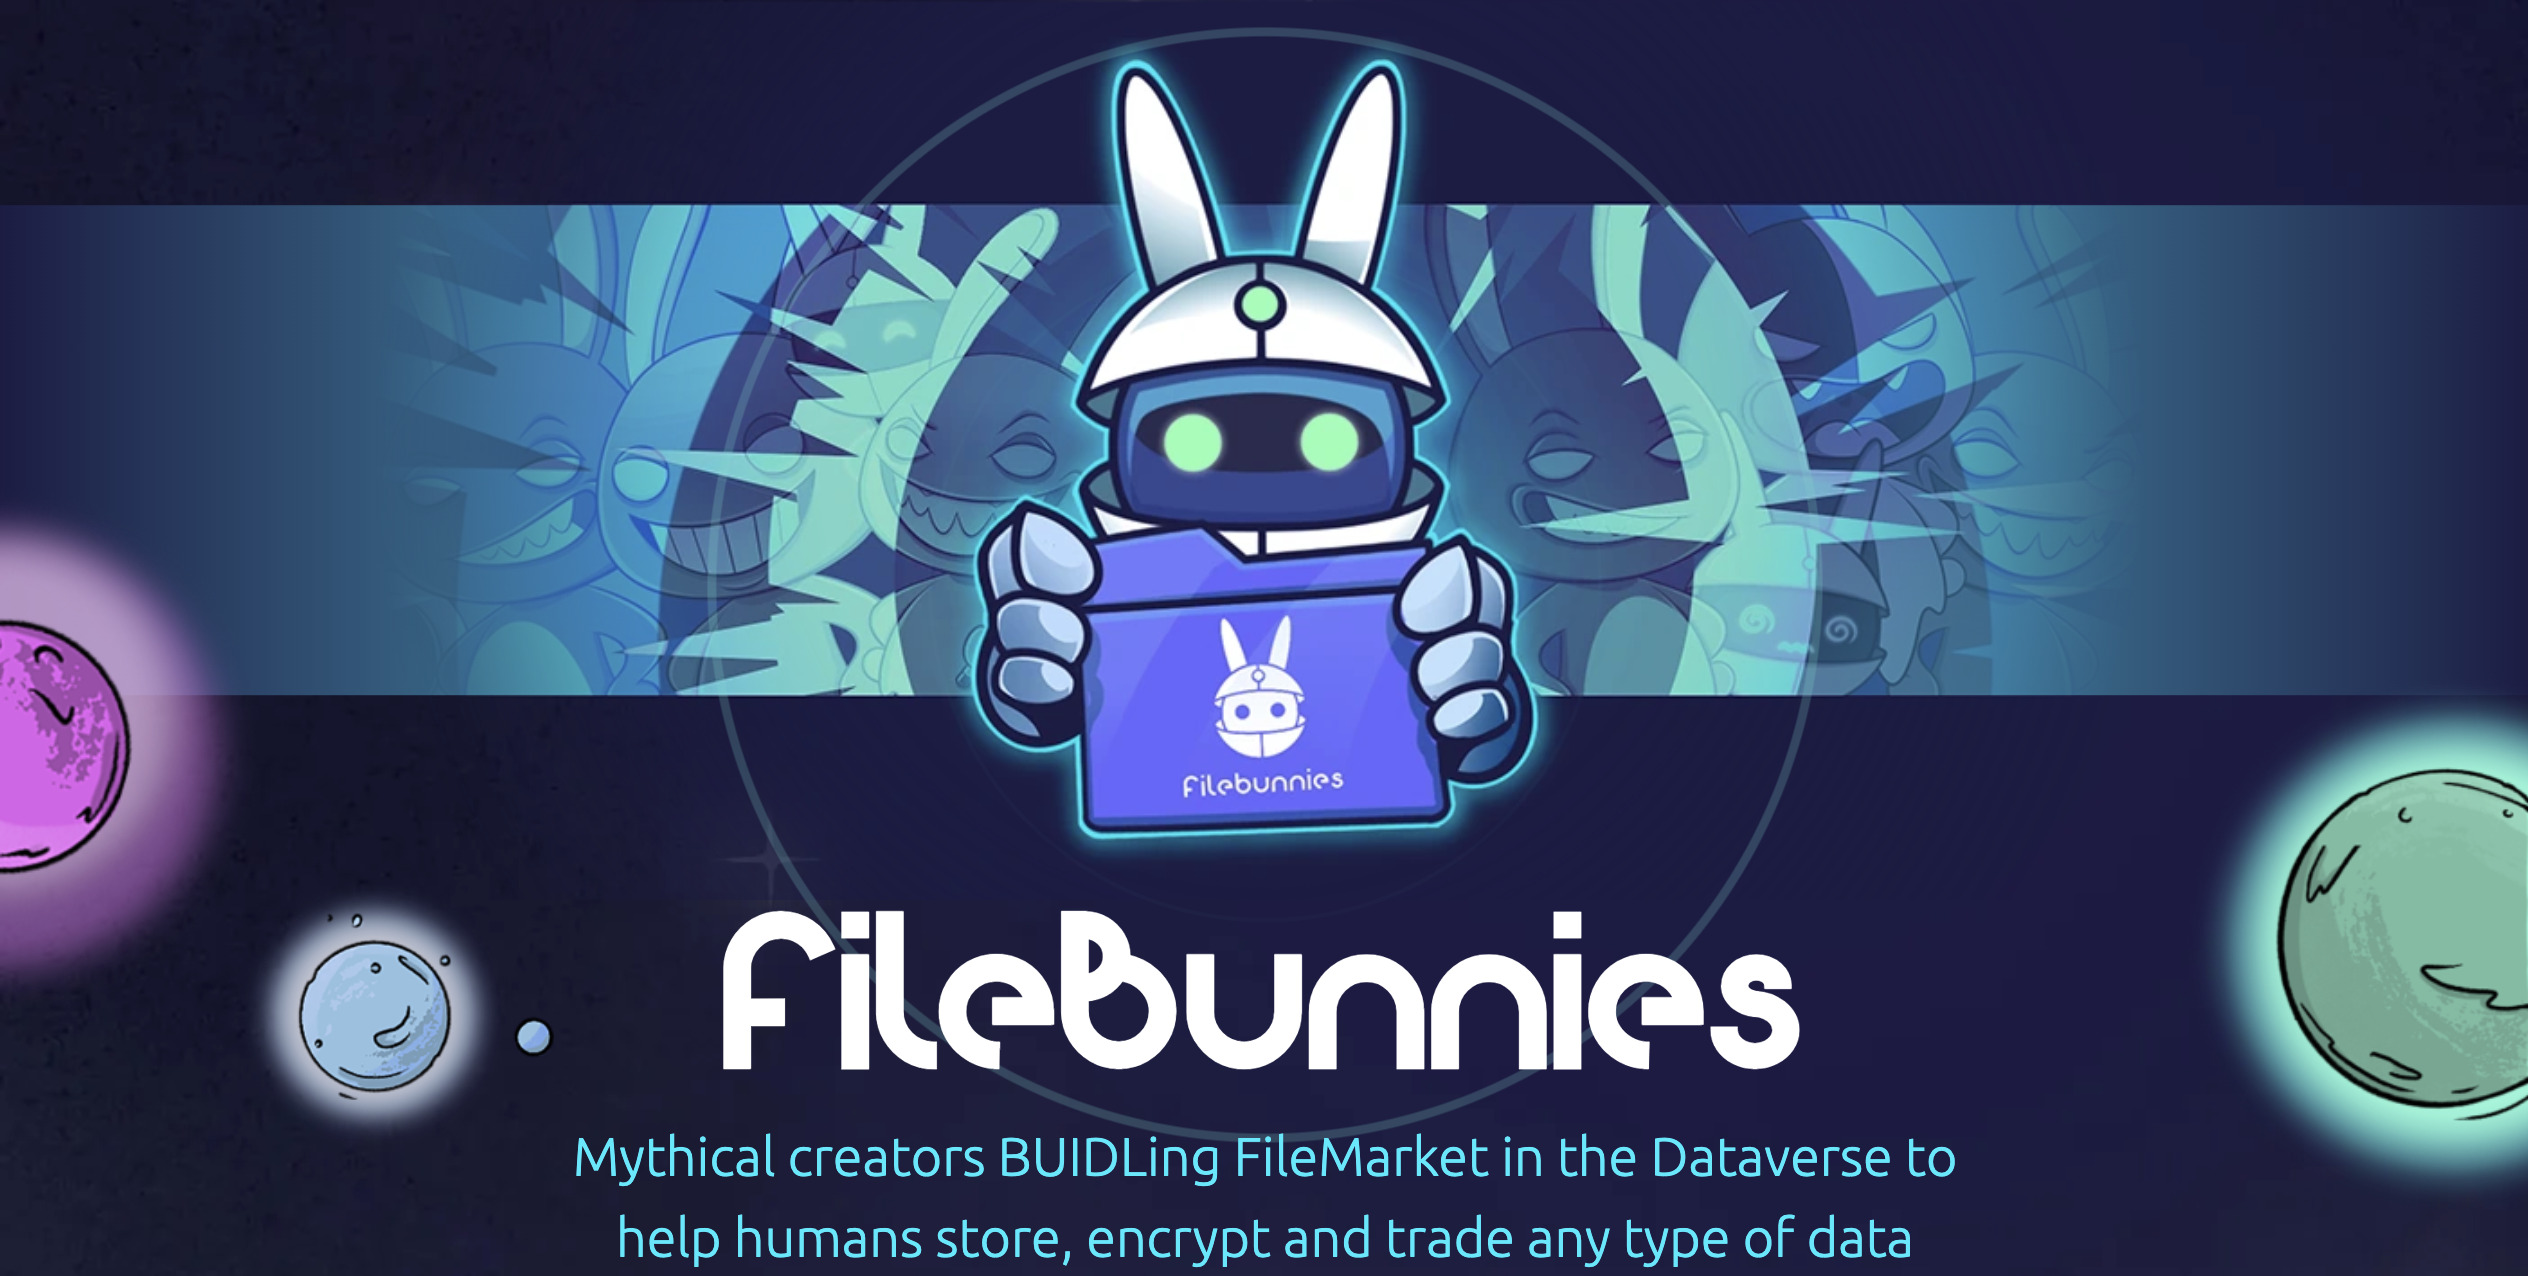 FileBunnies: Bộ sưu tập NFT đầu tiên có lớp bảo mật trên Filecoin